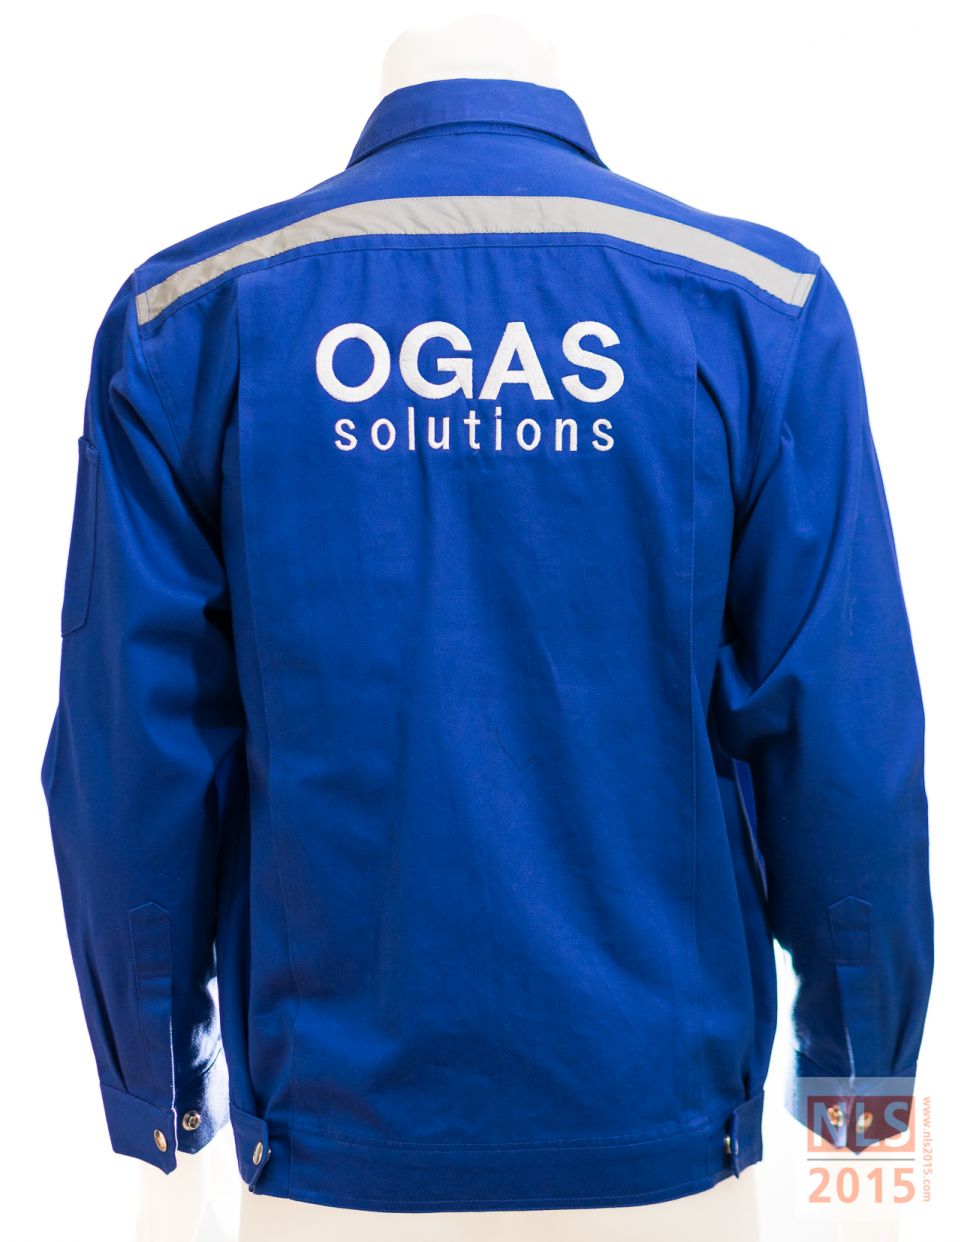 เครื่องแบบพนักงาน OGAS / โรงงานผลิตชุดยูนิฟอร์มพนักงาน เสื้อโปโล นลินสิริ ชลบุรีรูปที่ 